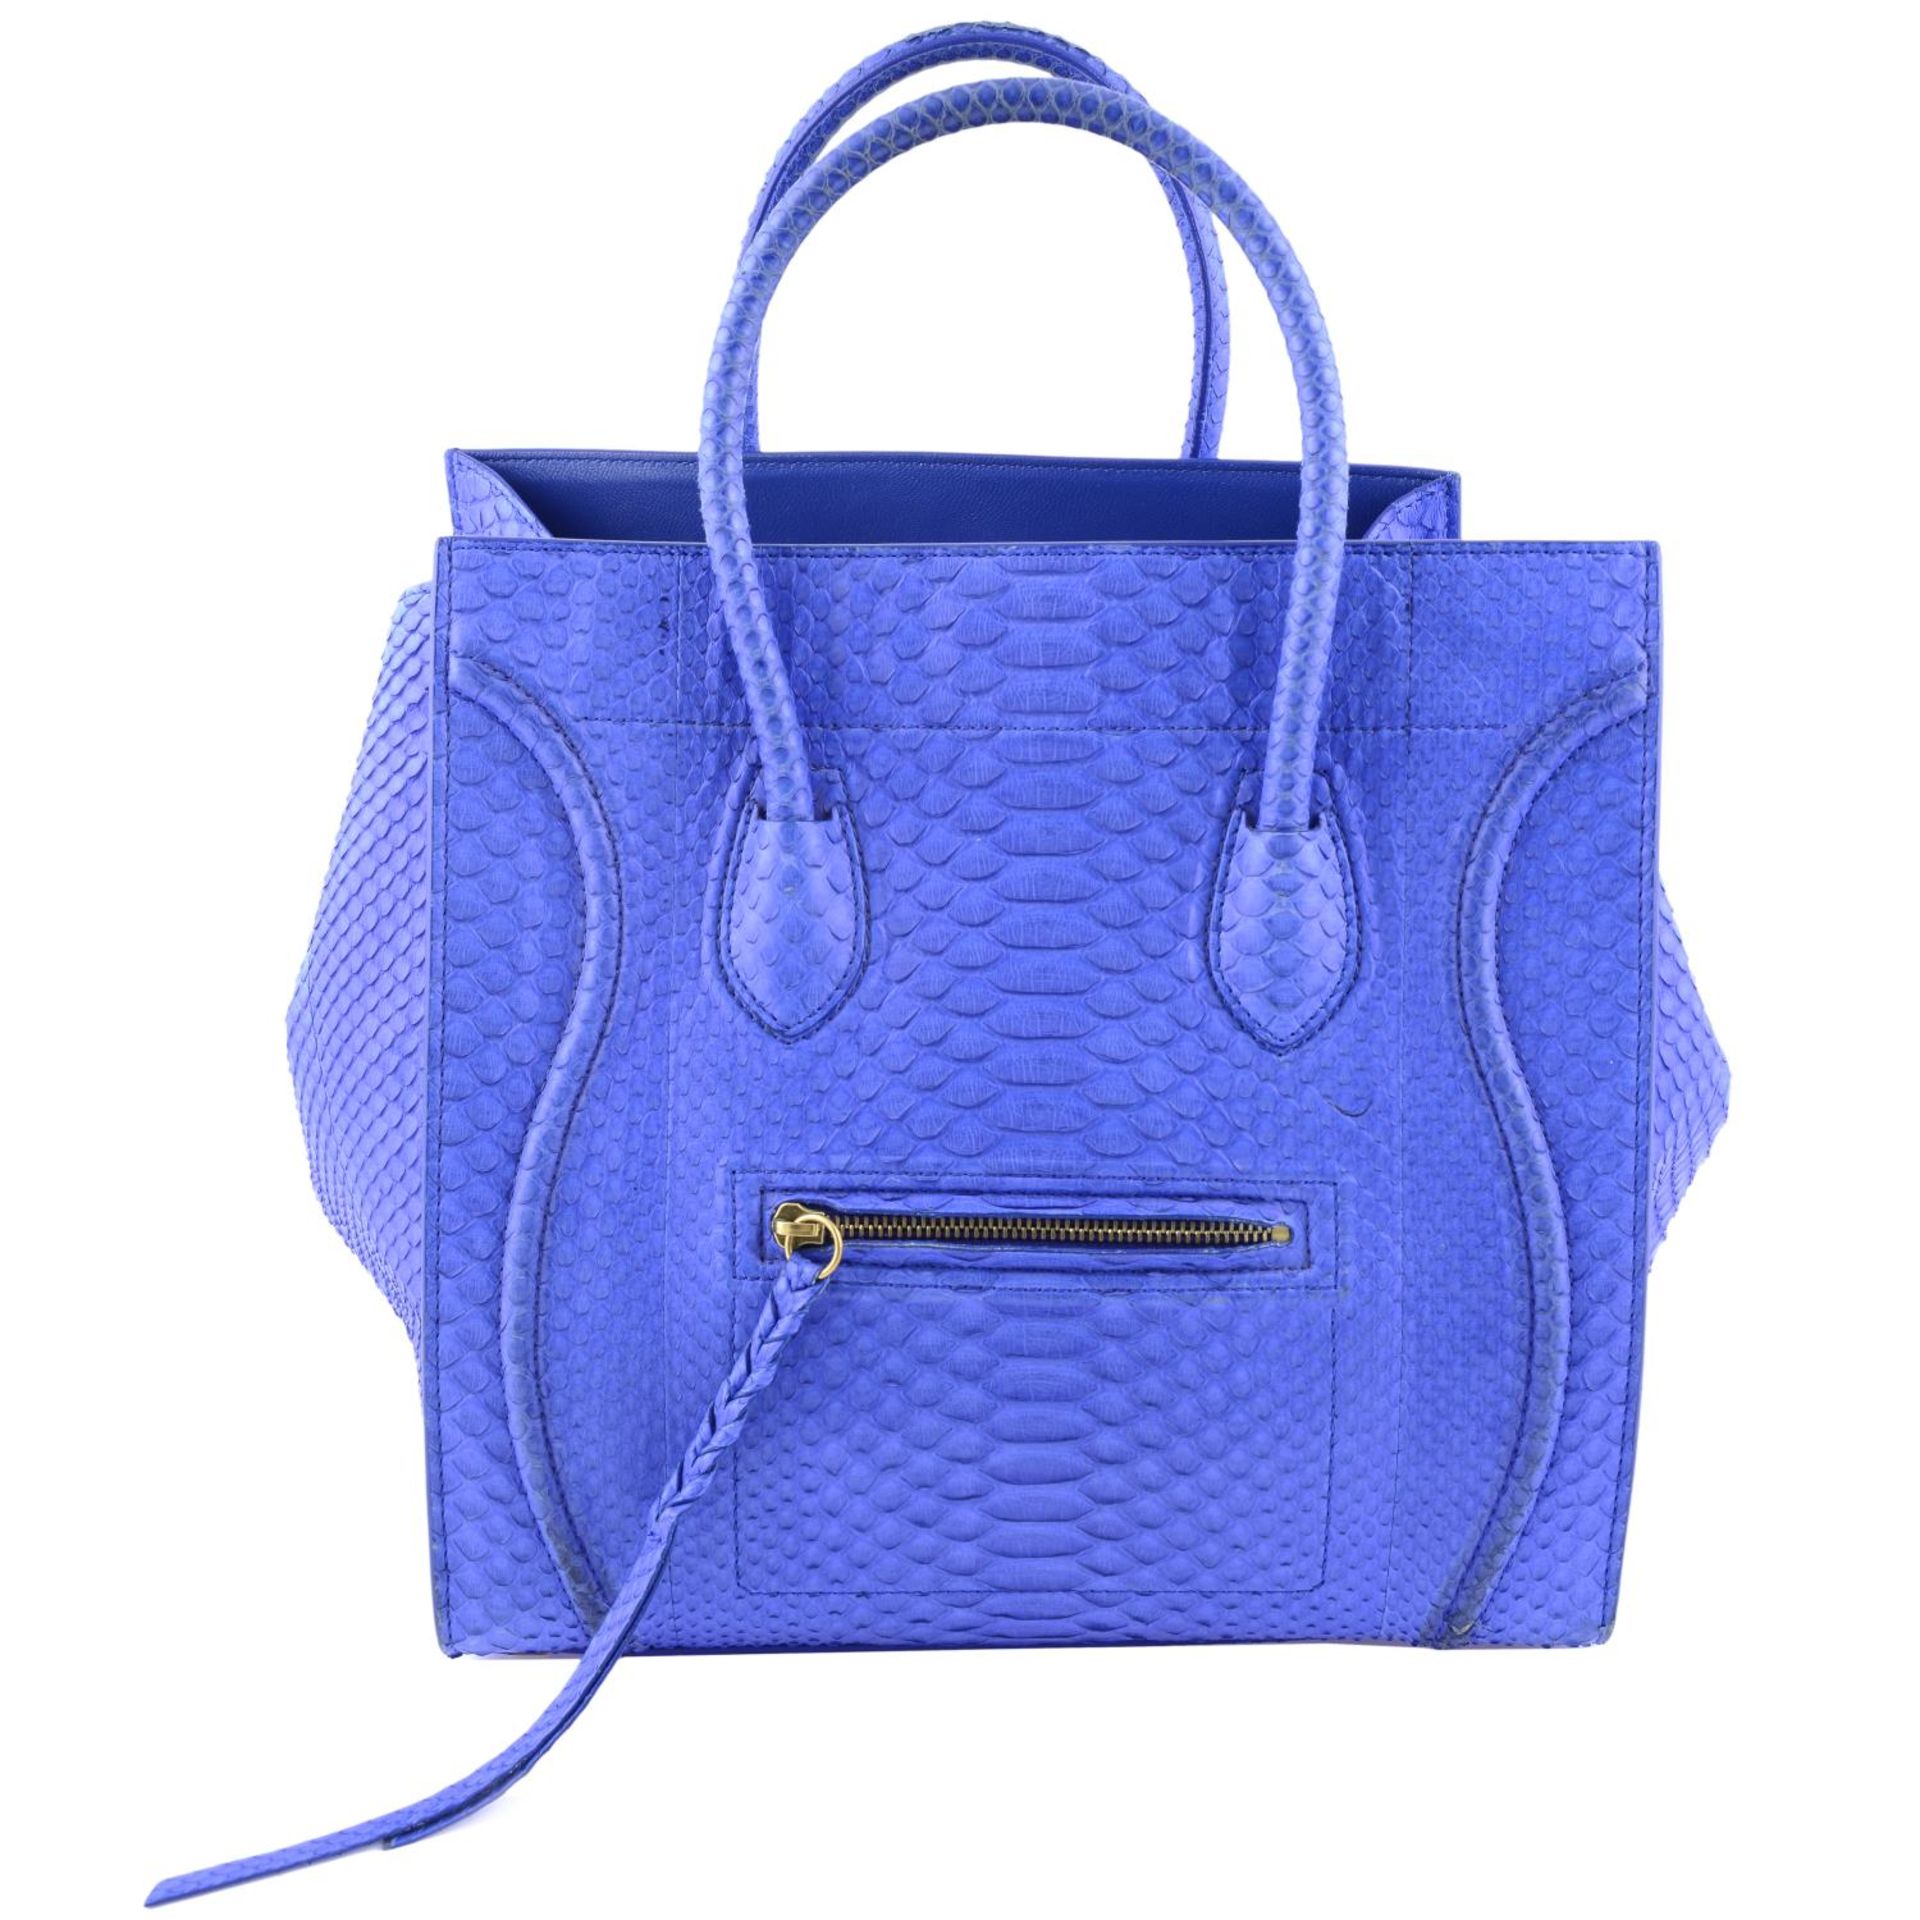 CÉLINE - a blue python skin Phantom handbag.